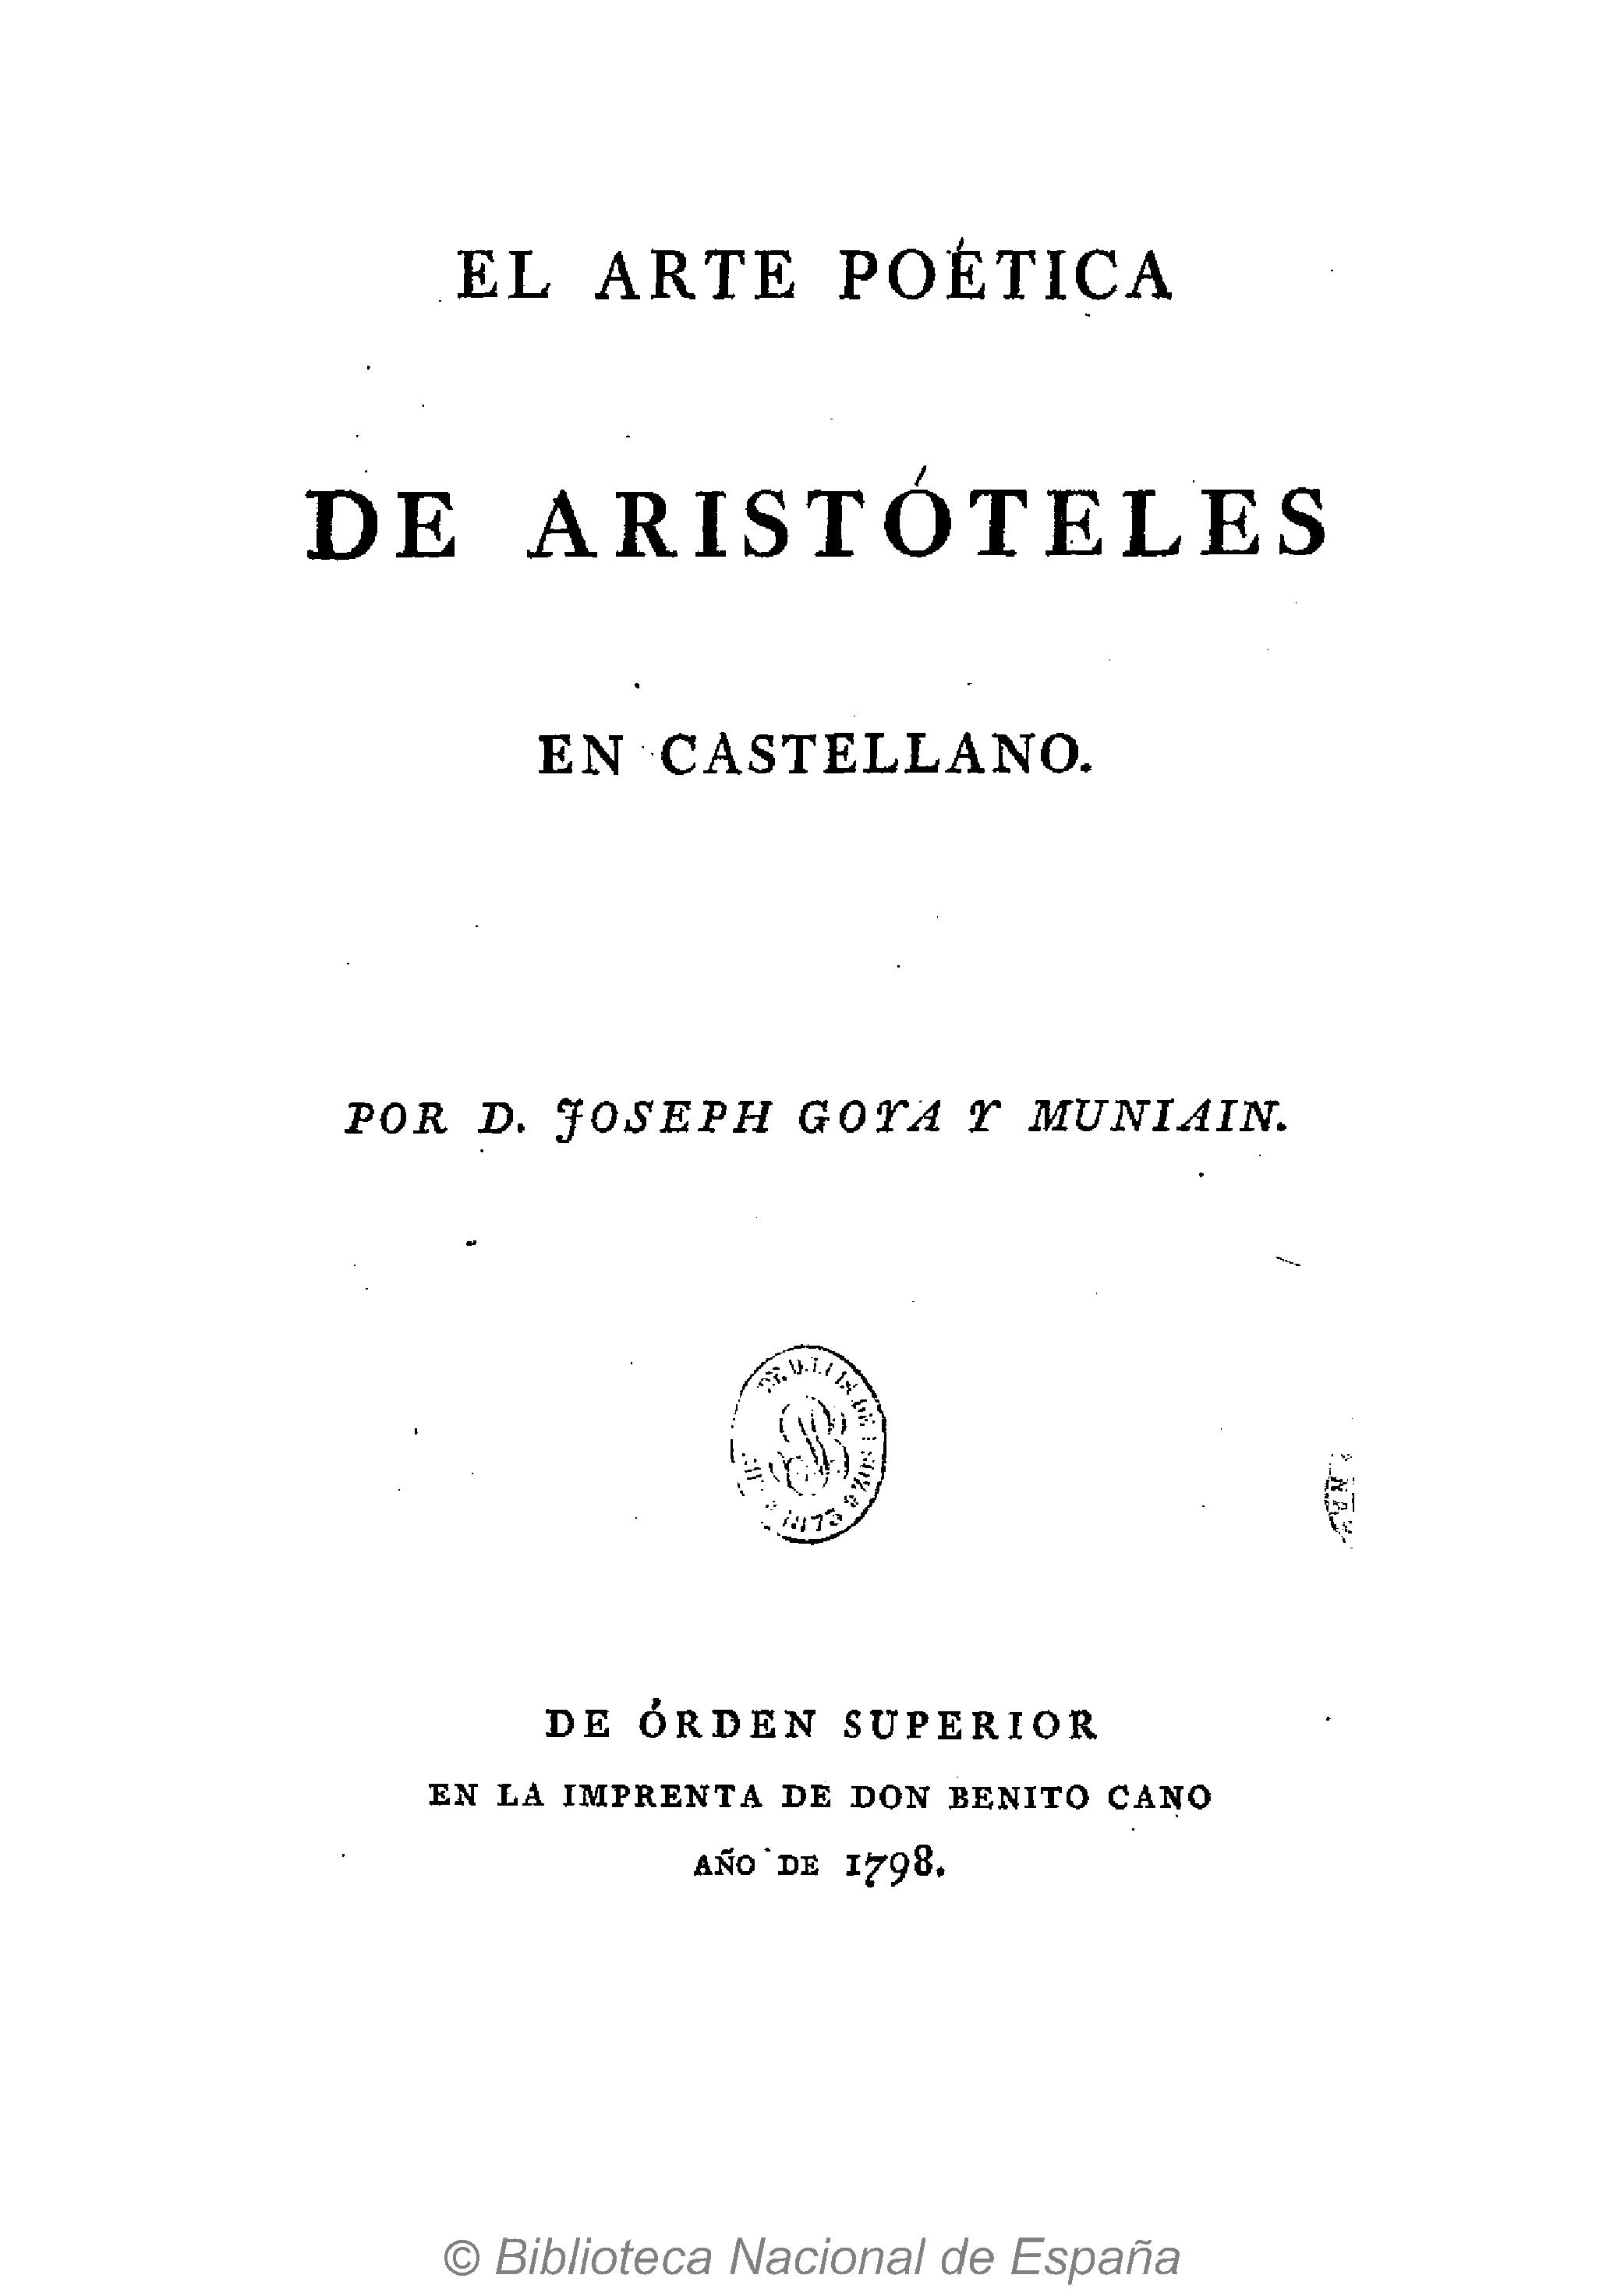 El arte poética de Aristóteles en castellano